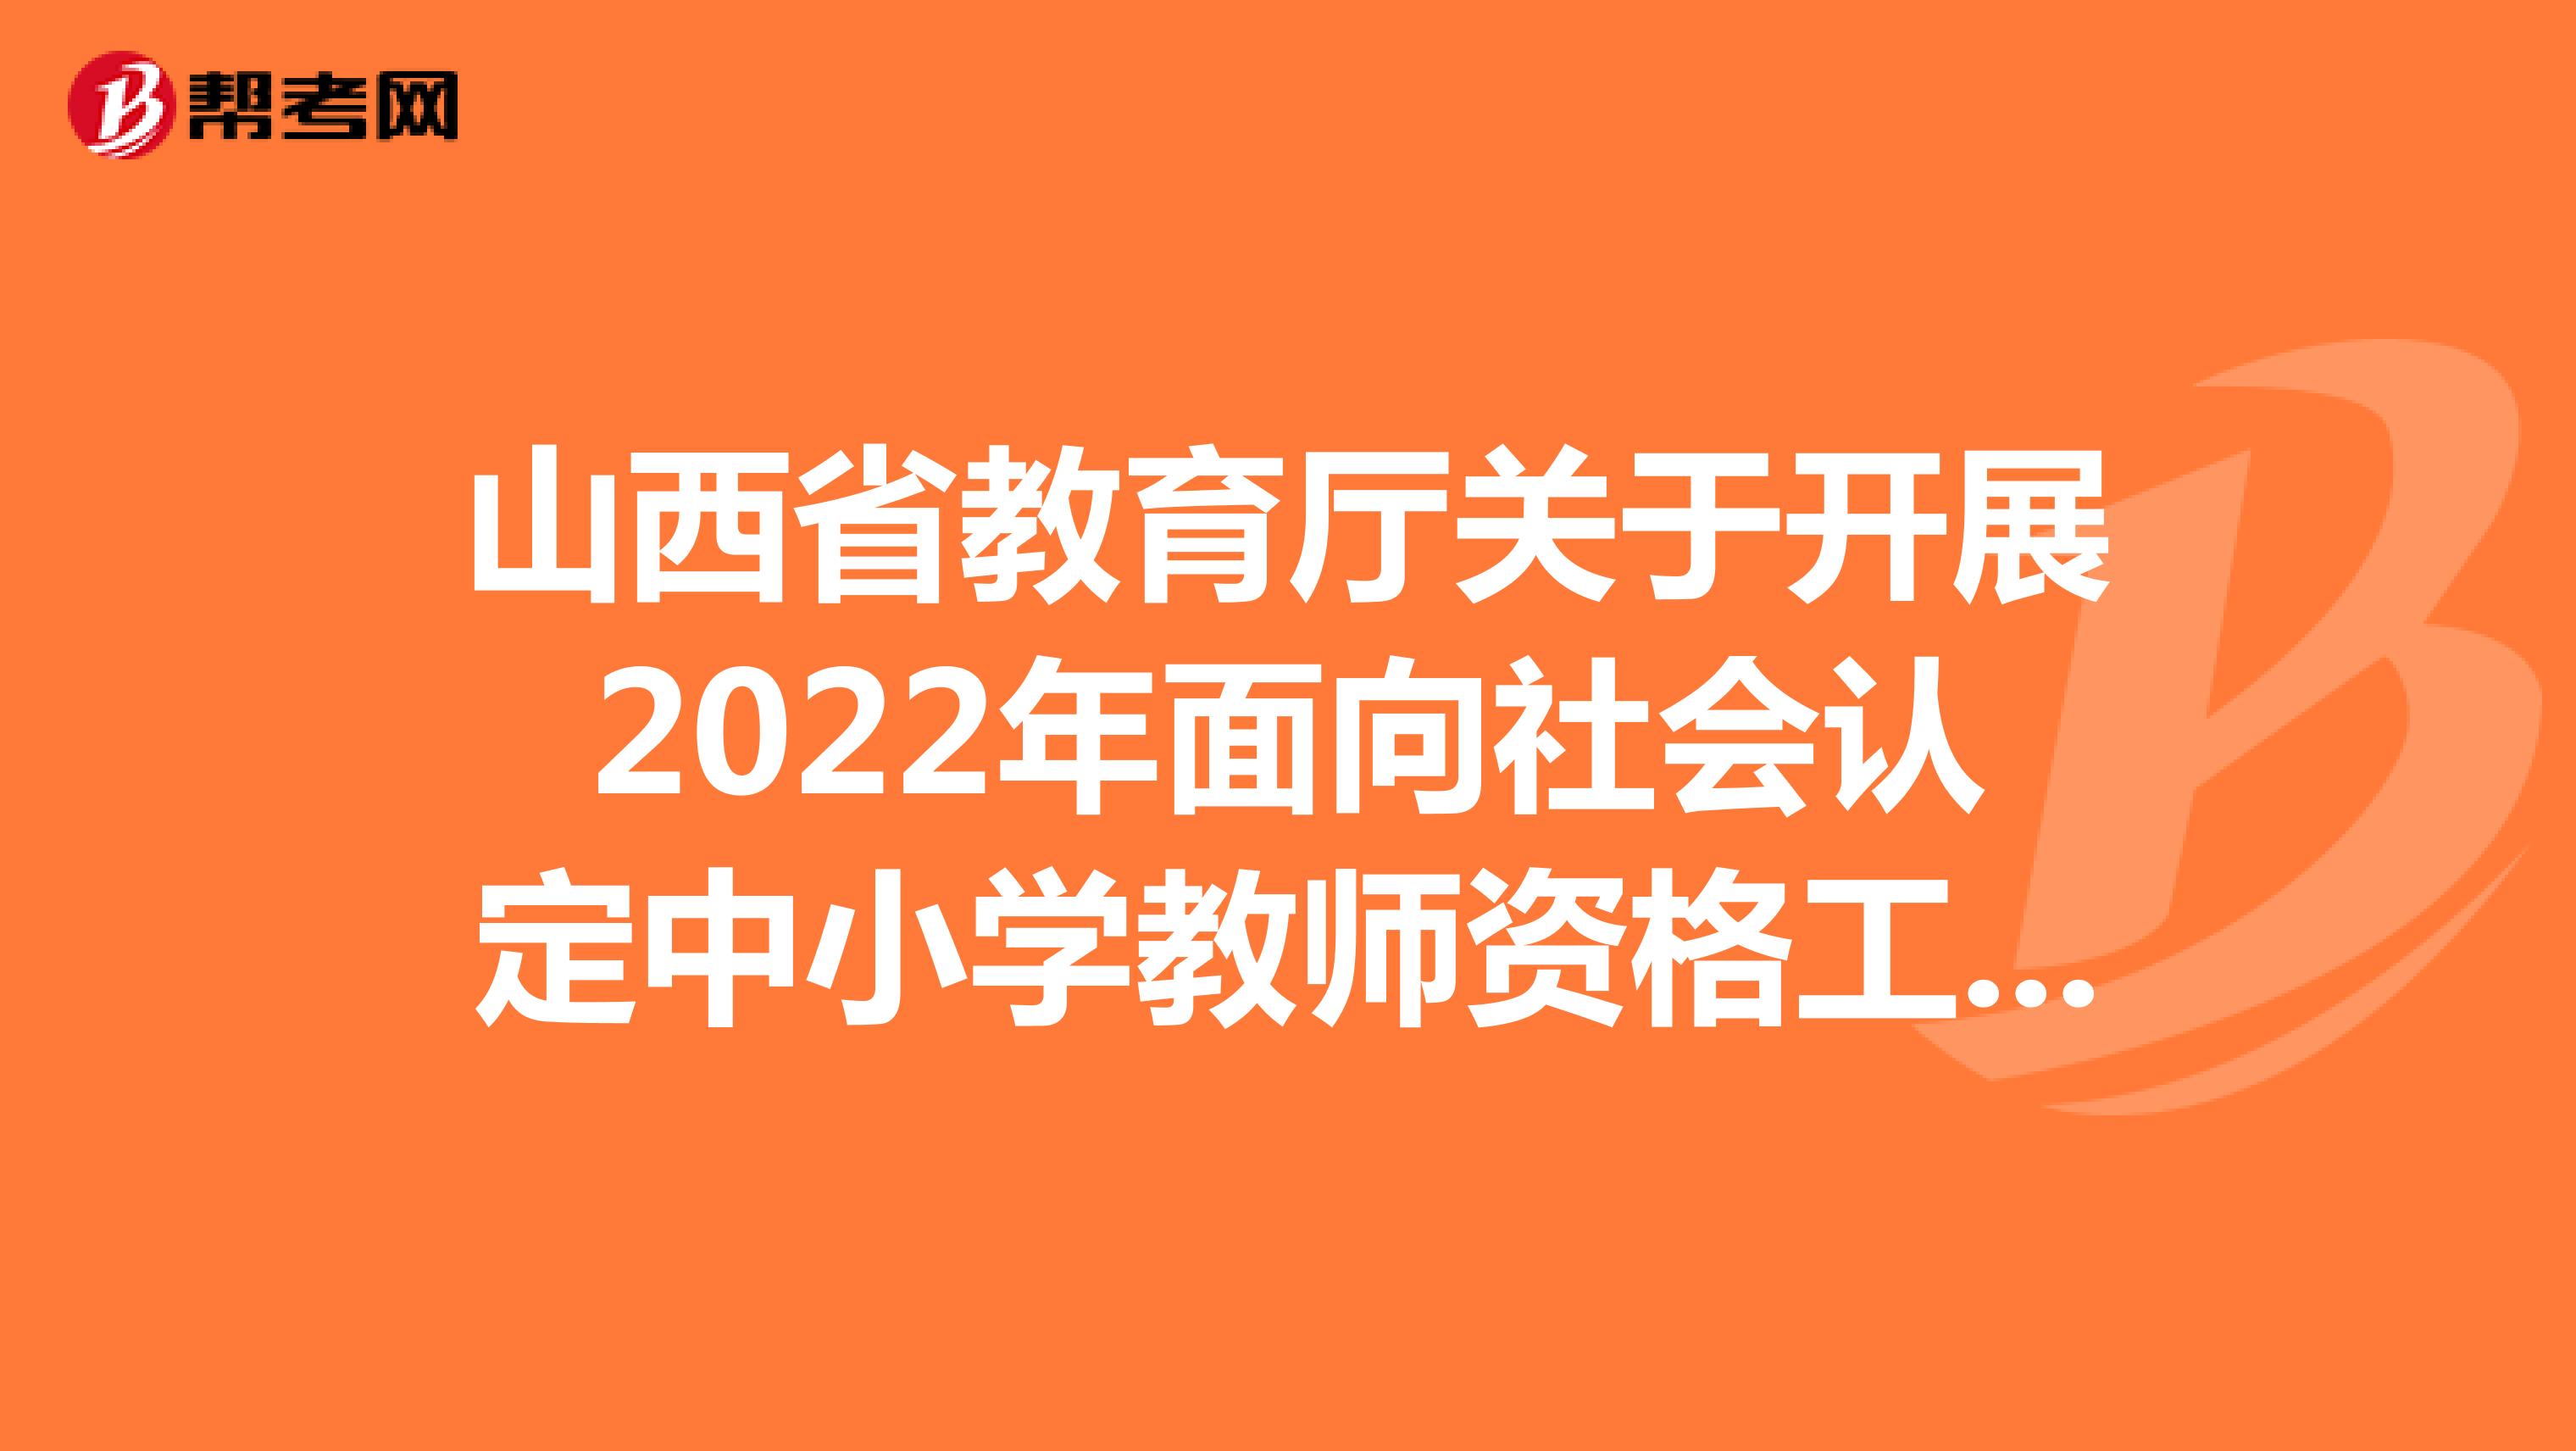 山西省教育厅关于开展2022年面向社会认定中小学教师资格工作的公告